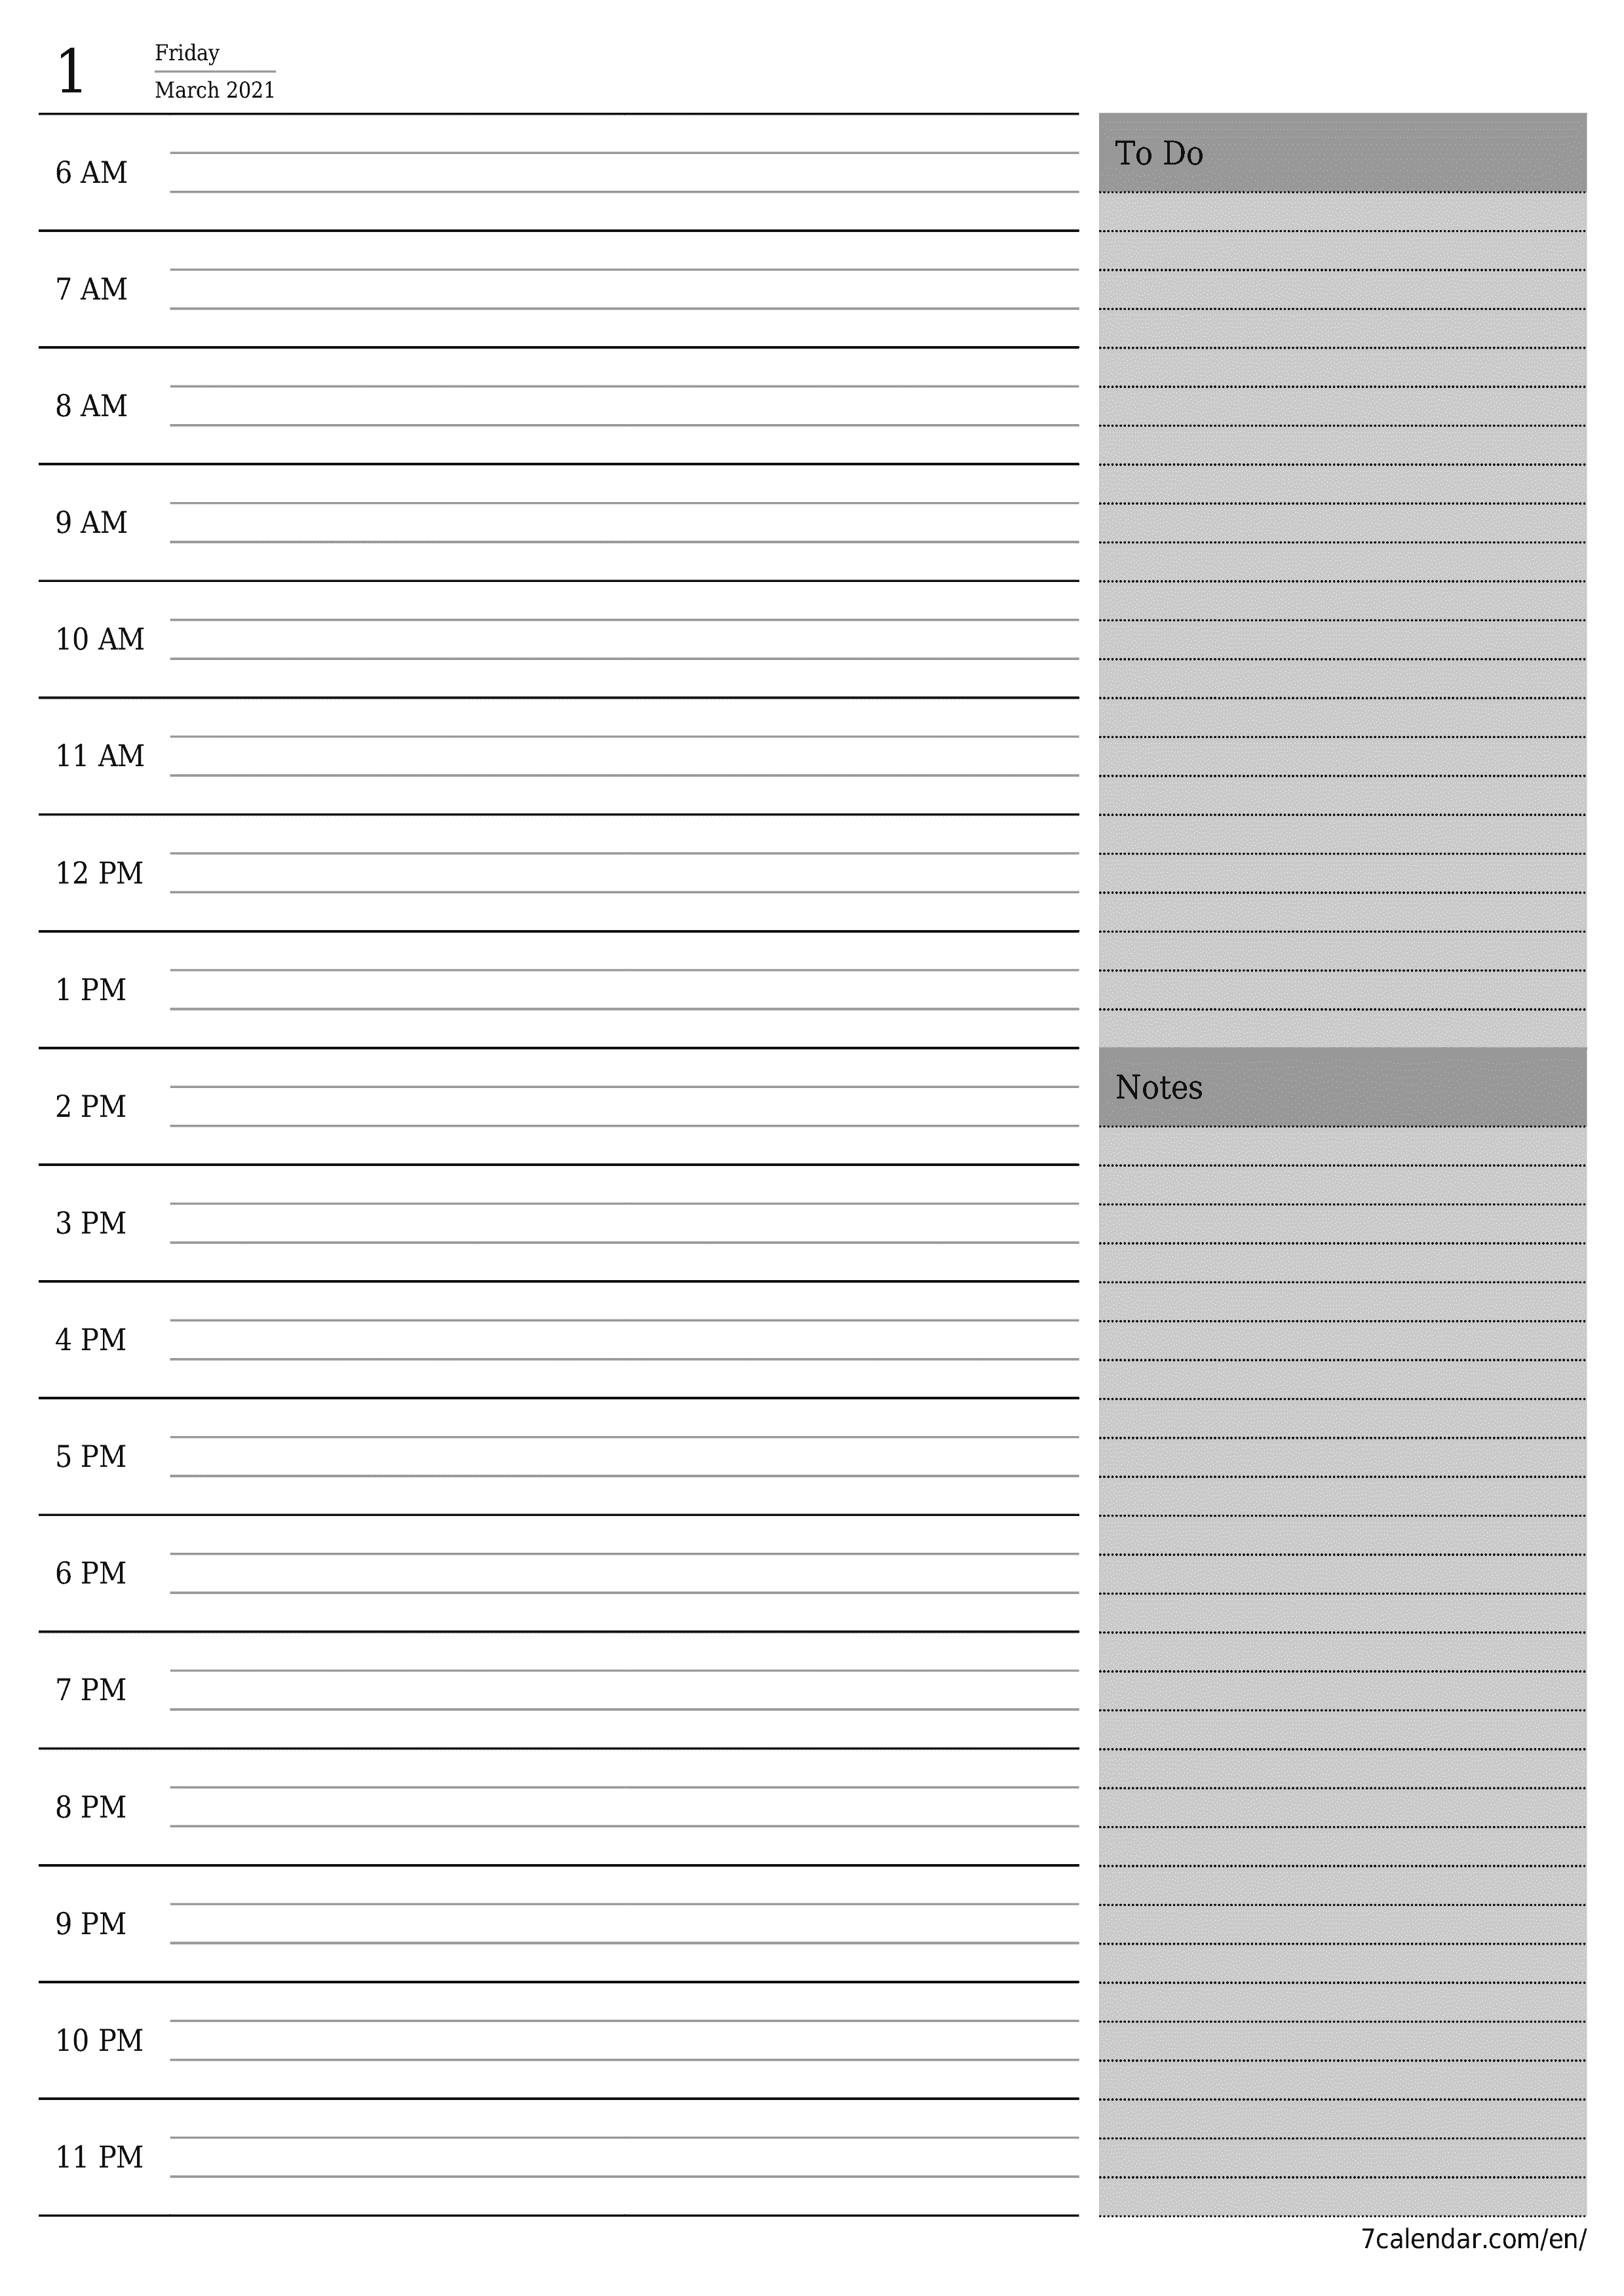 Blank calendar March 2021